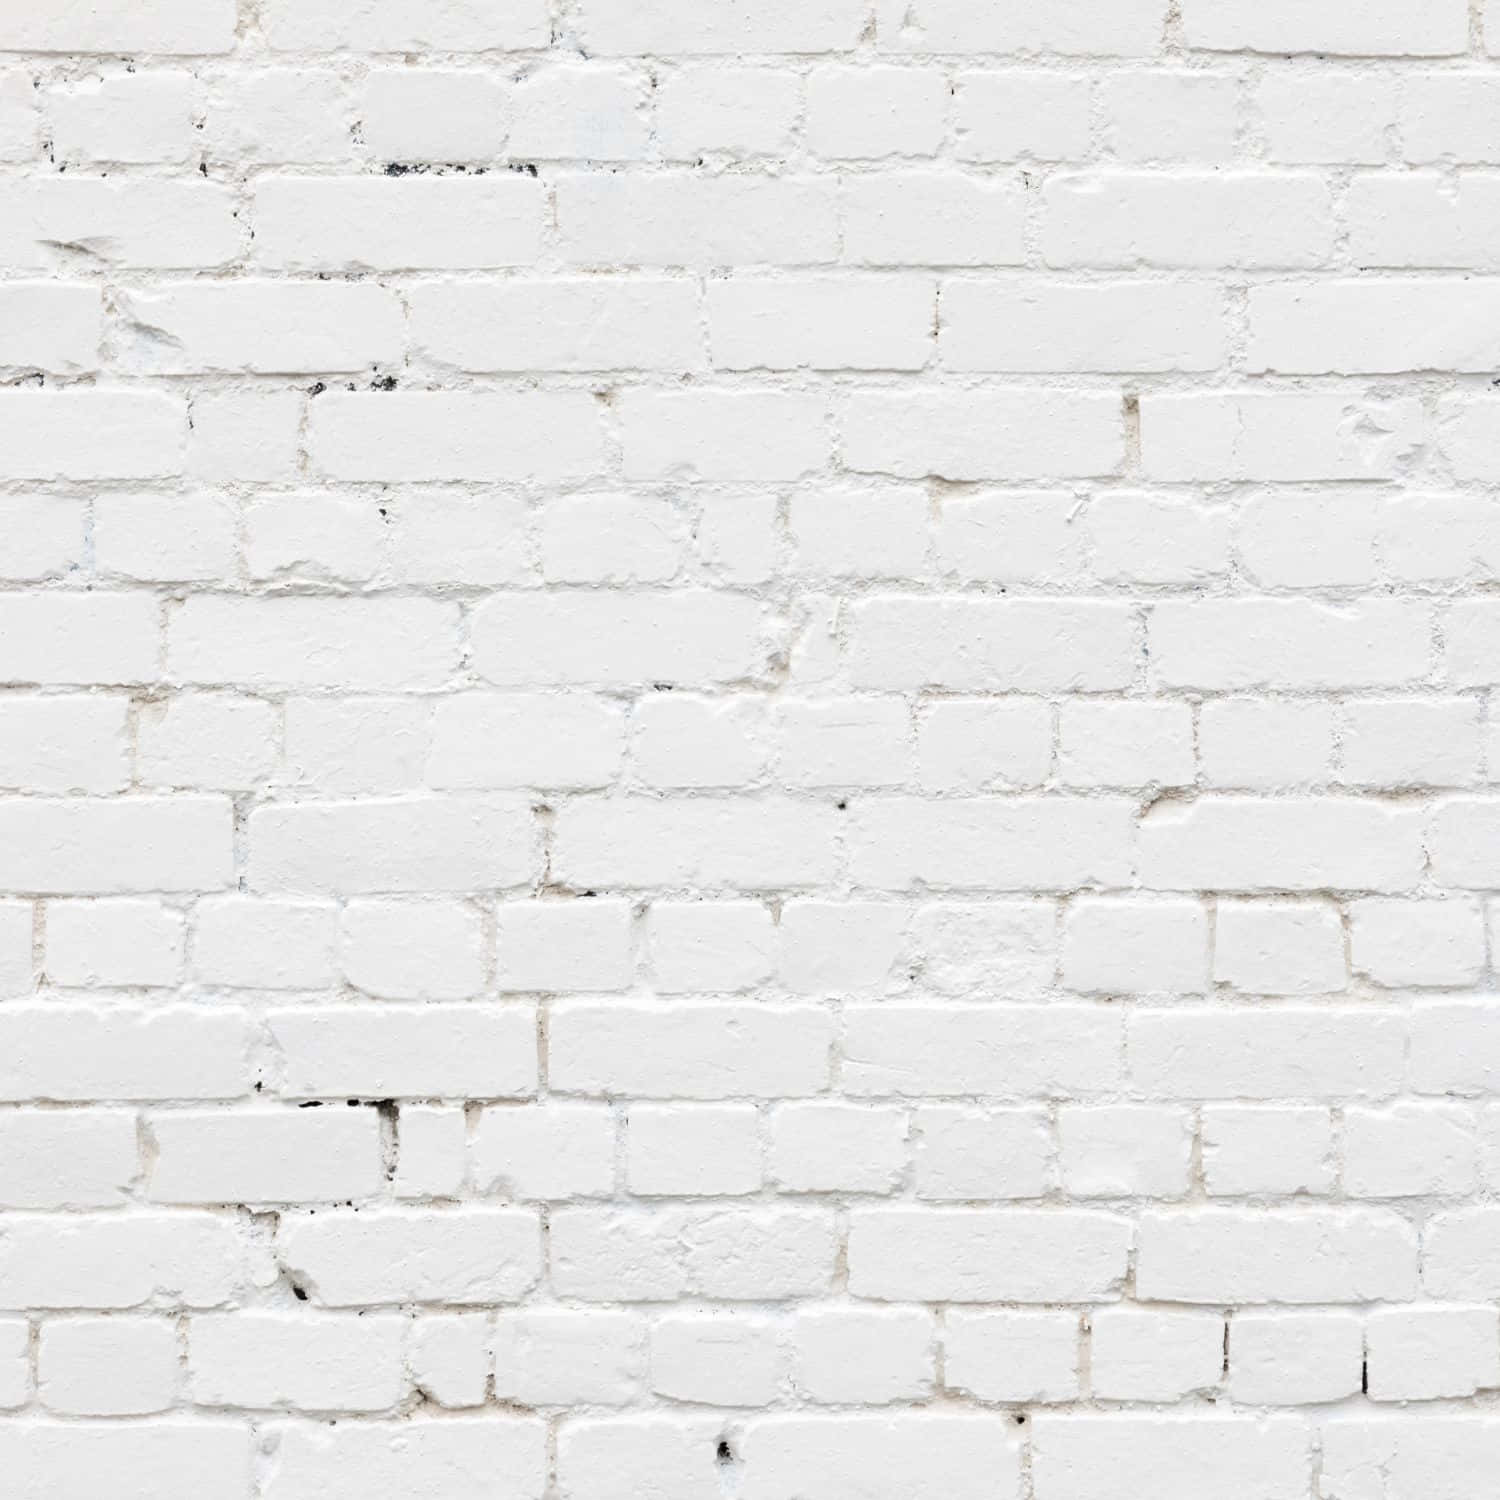 Brickväggi Vitt Till Ipad Wallpaper